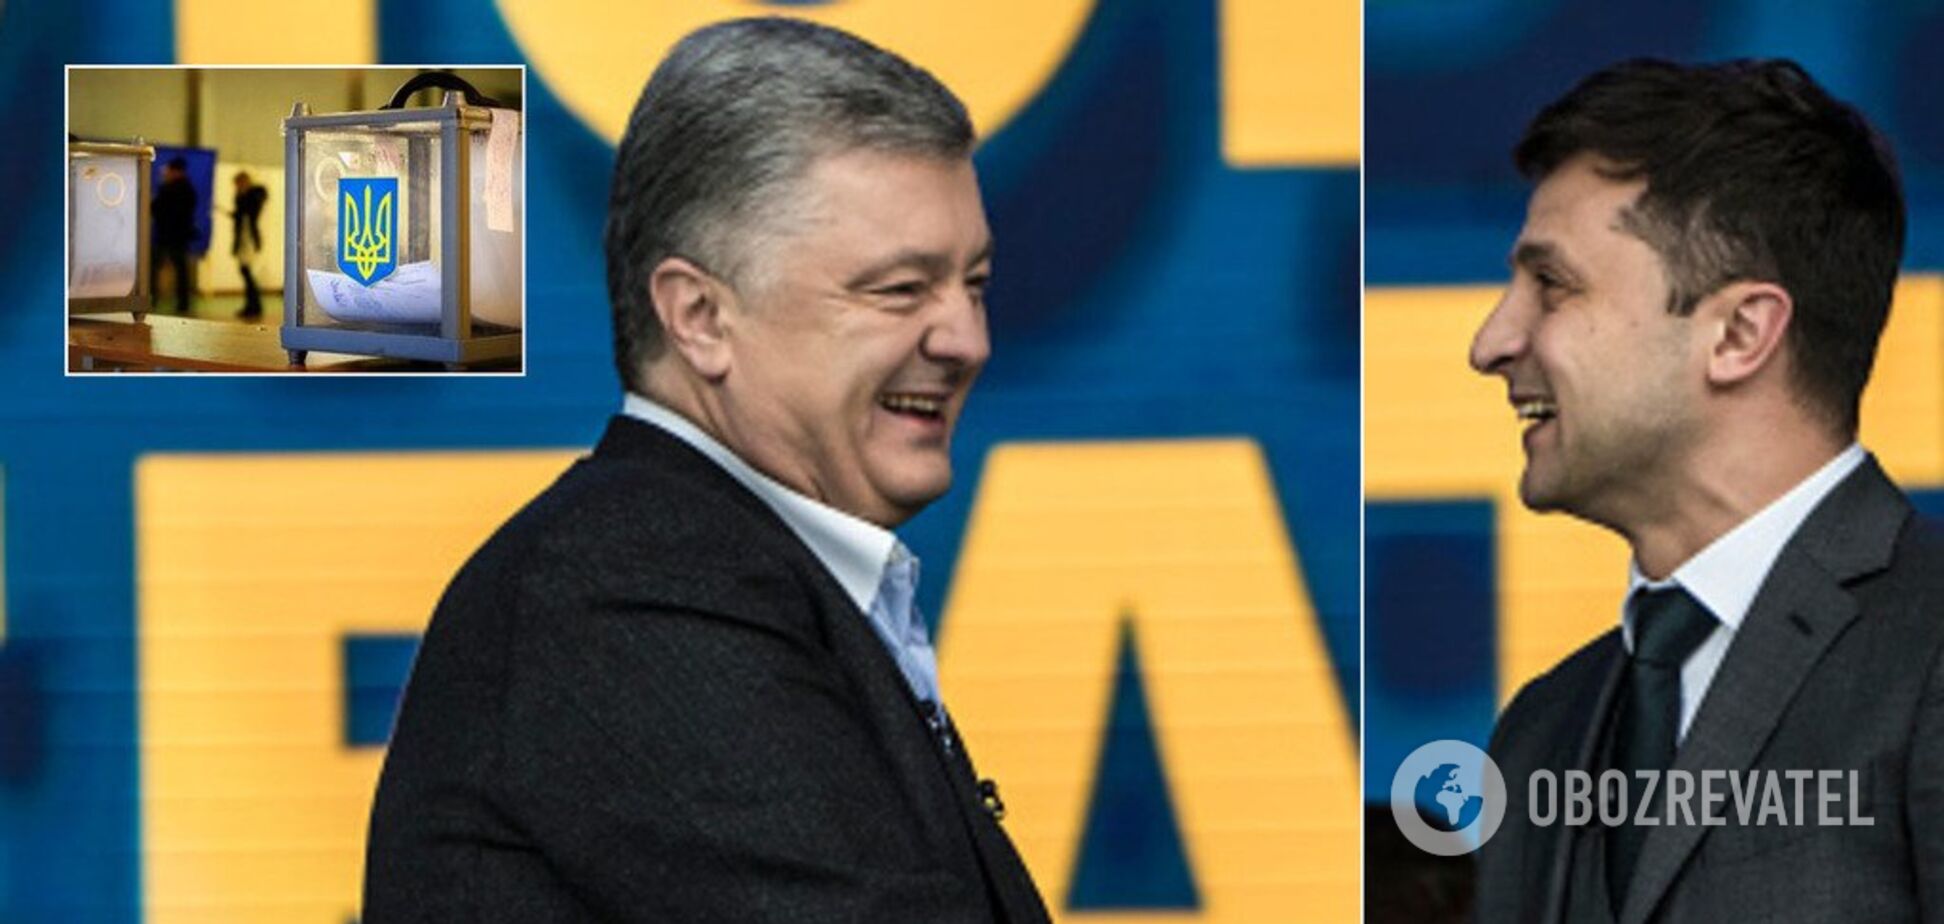 Второй тур выборов президента Украины 2019: результаты онлайн, явка, экзит-полы